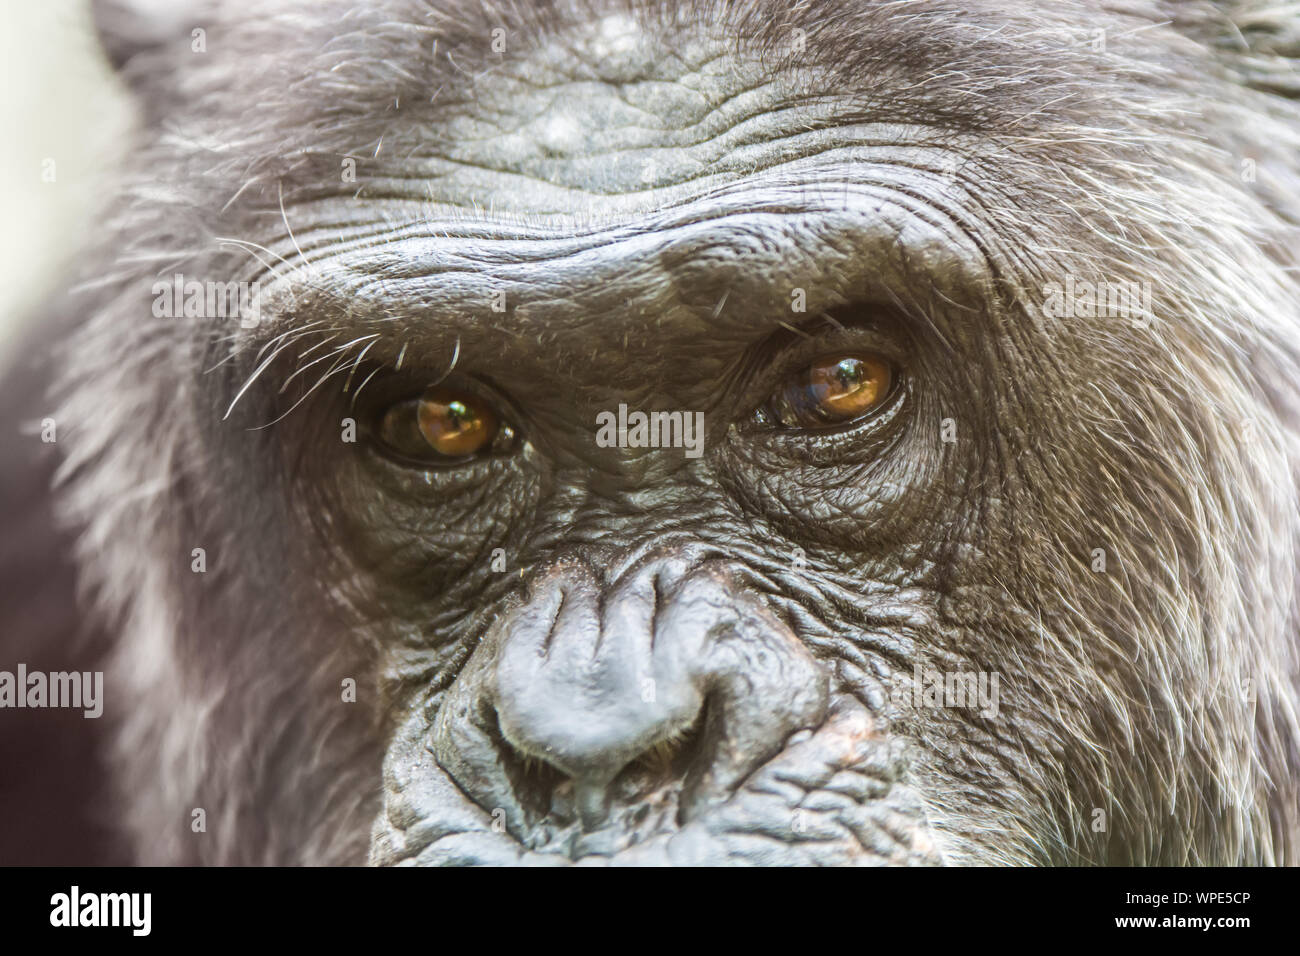 Dettaglio del volto di uno scimpanzé Foto Stock